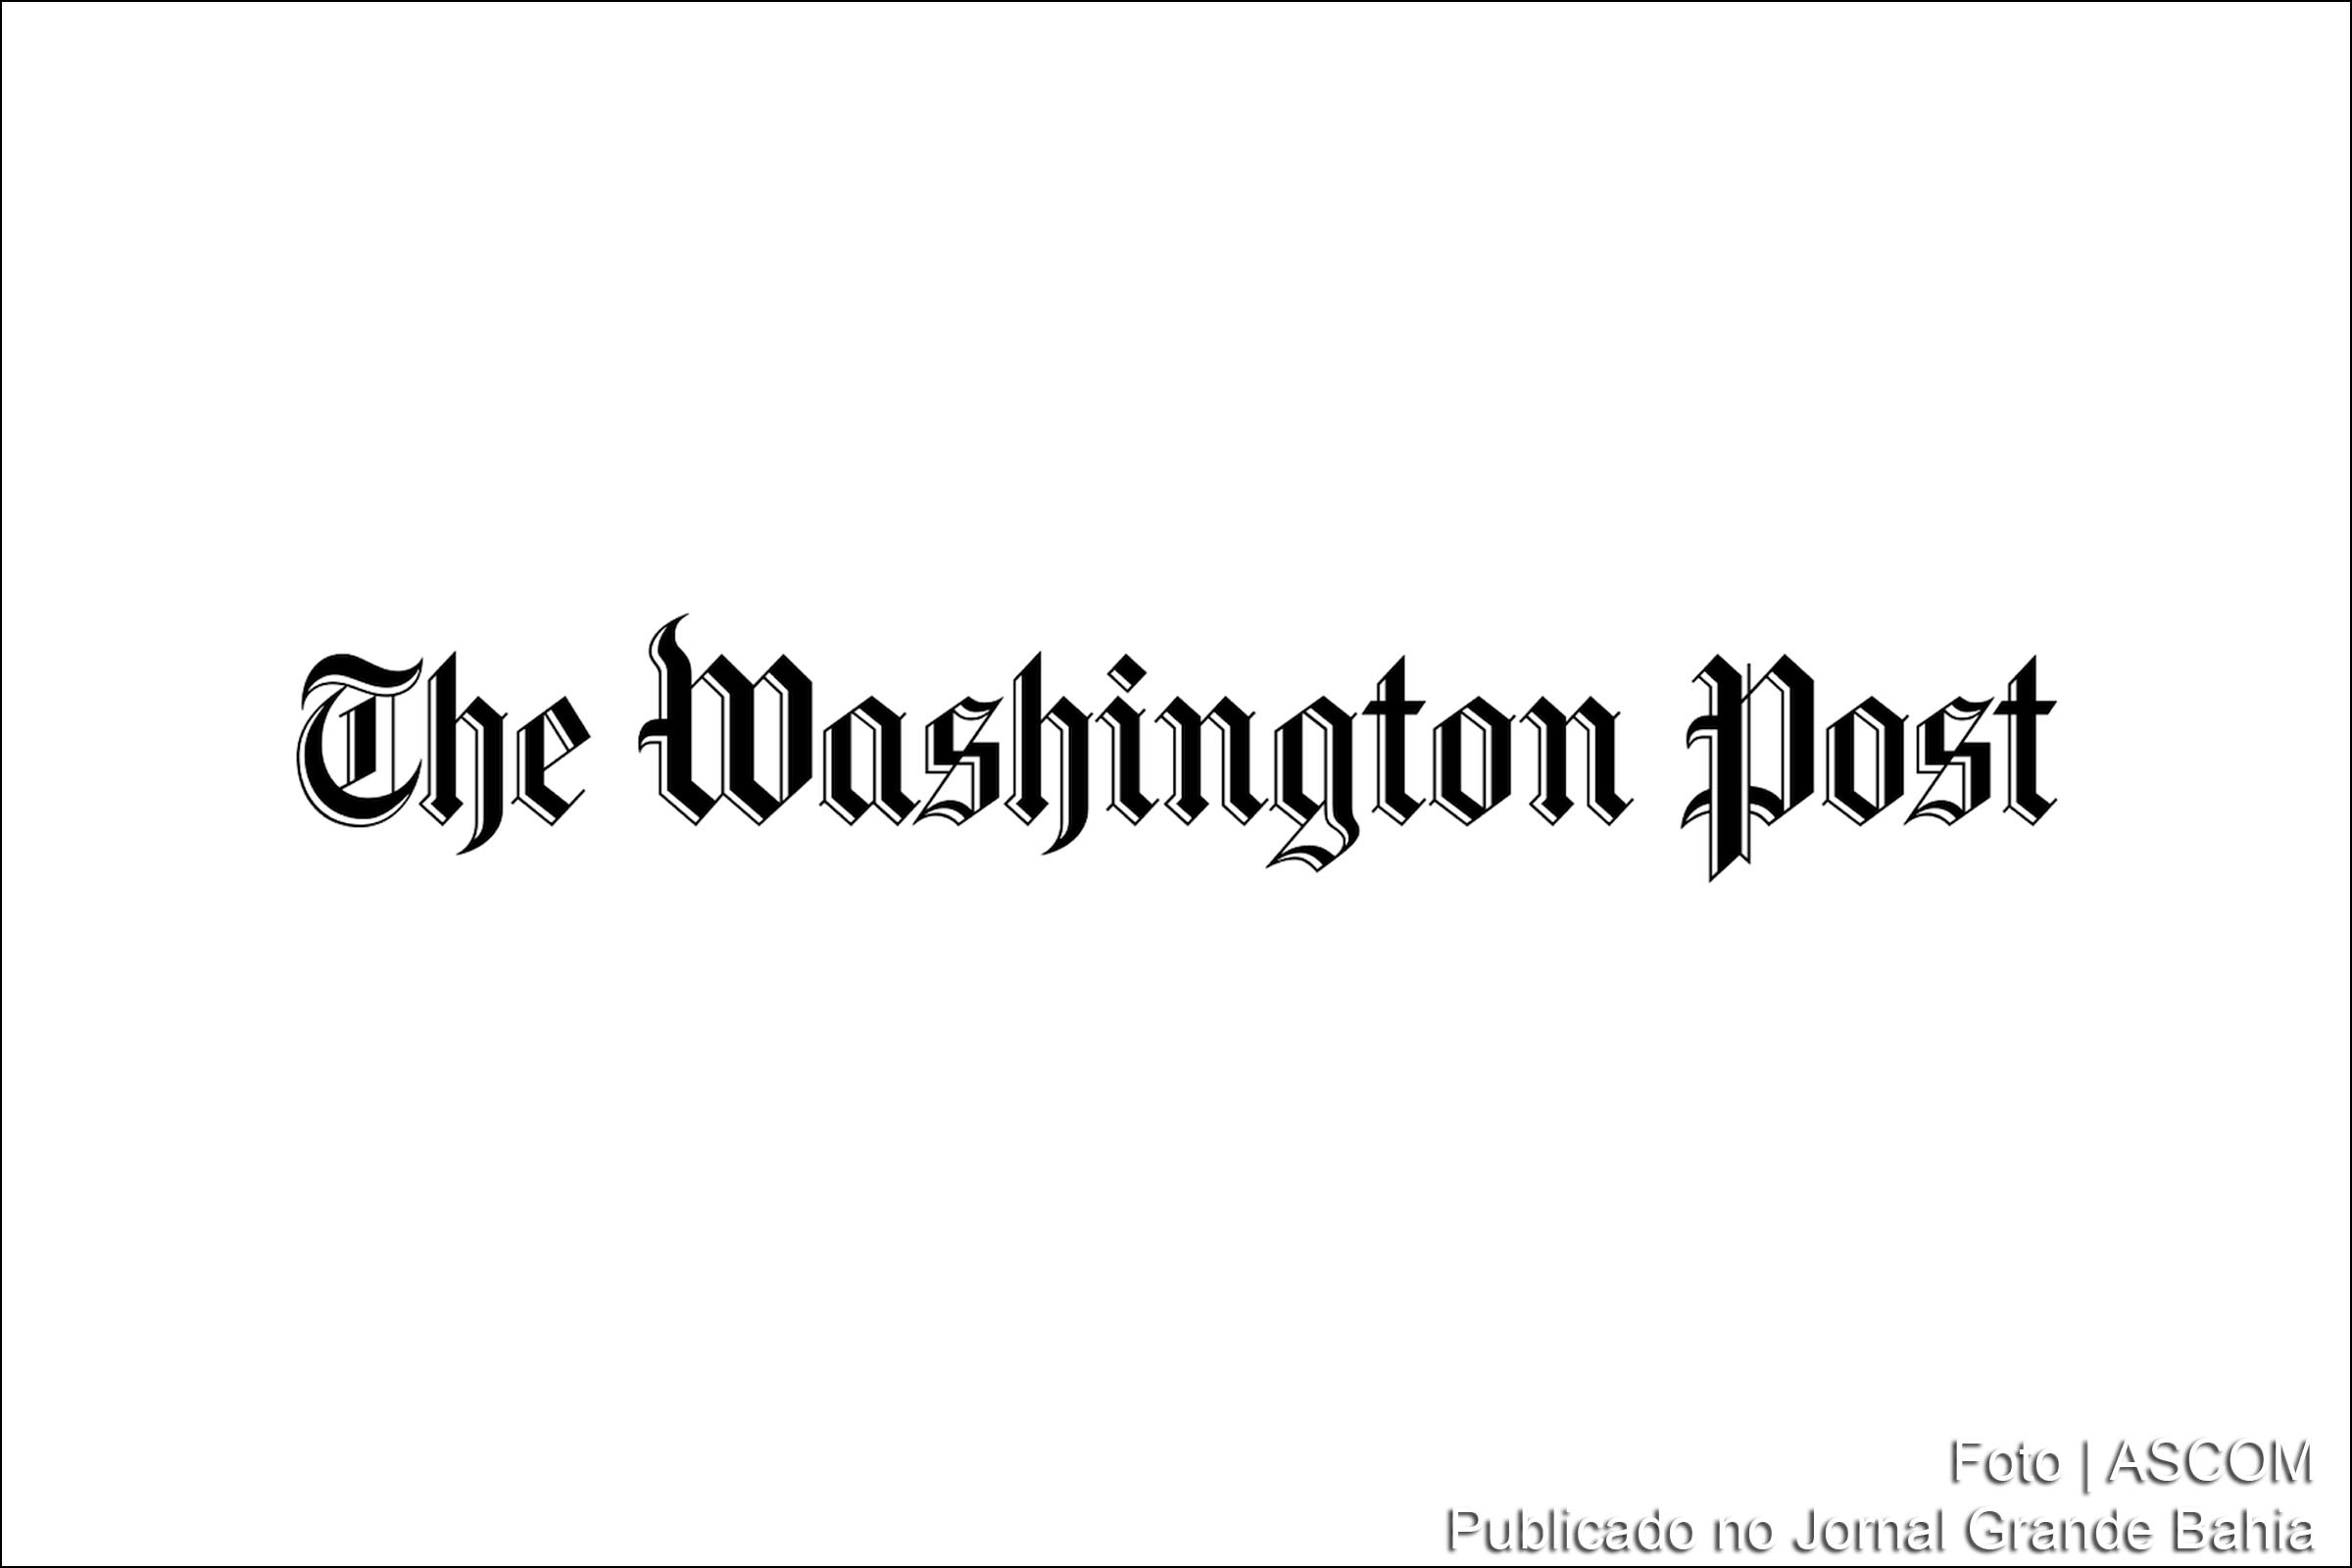 The Washington Post (literalmente "O Correio de Washington"), mais conhecido por Washington Post, ou até mesmo por Post, é um jornal diário estadunidense. É o jornal de maior circulação publicado em Washington, DC, e foi fundado em 6 de dezembro de 1877, tornando-o mais antigo jornal existente da área.